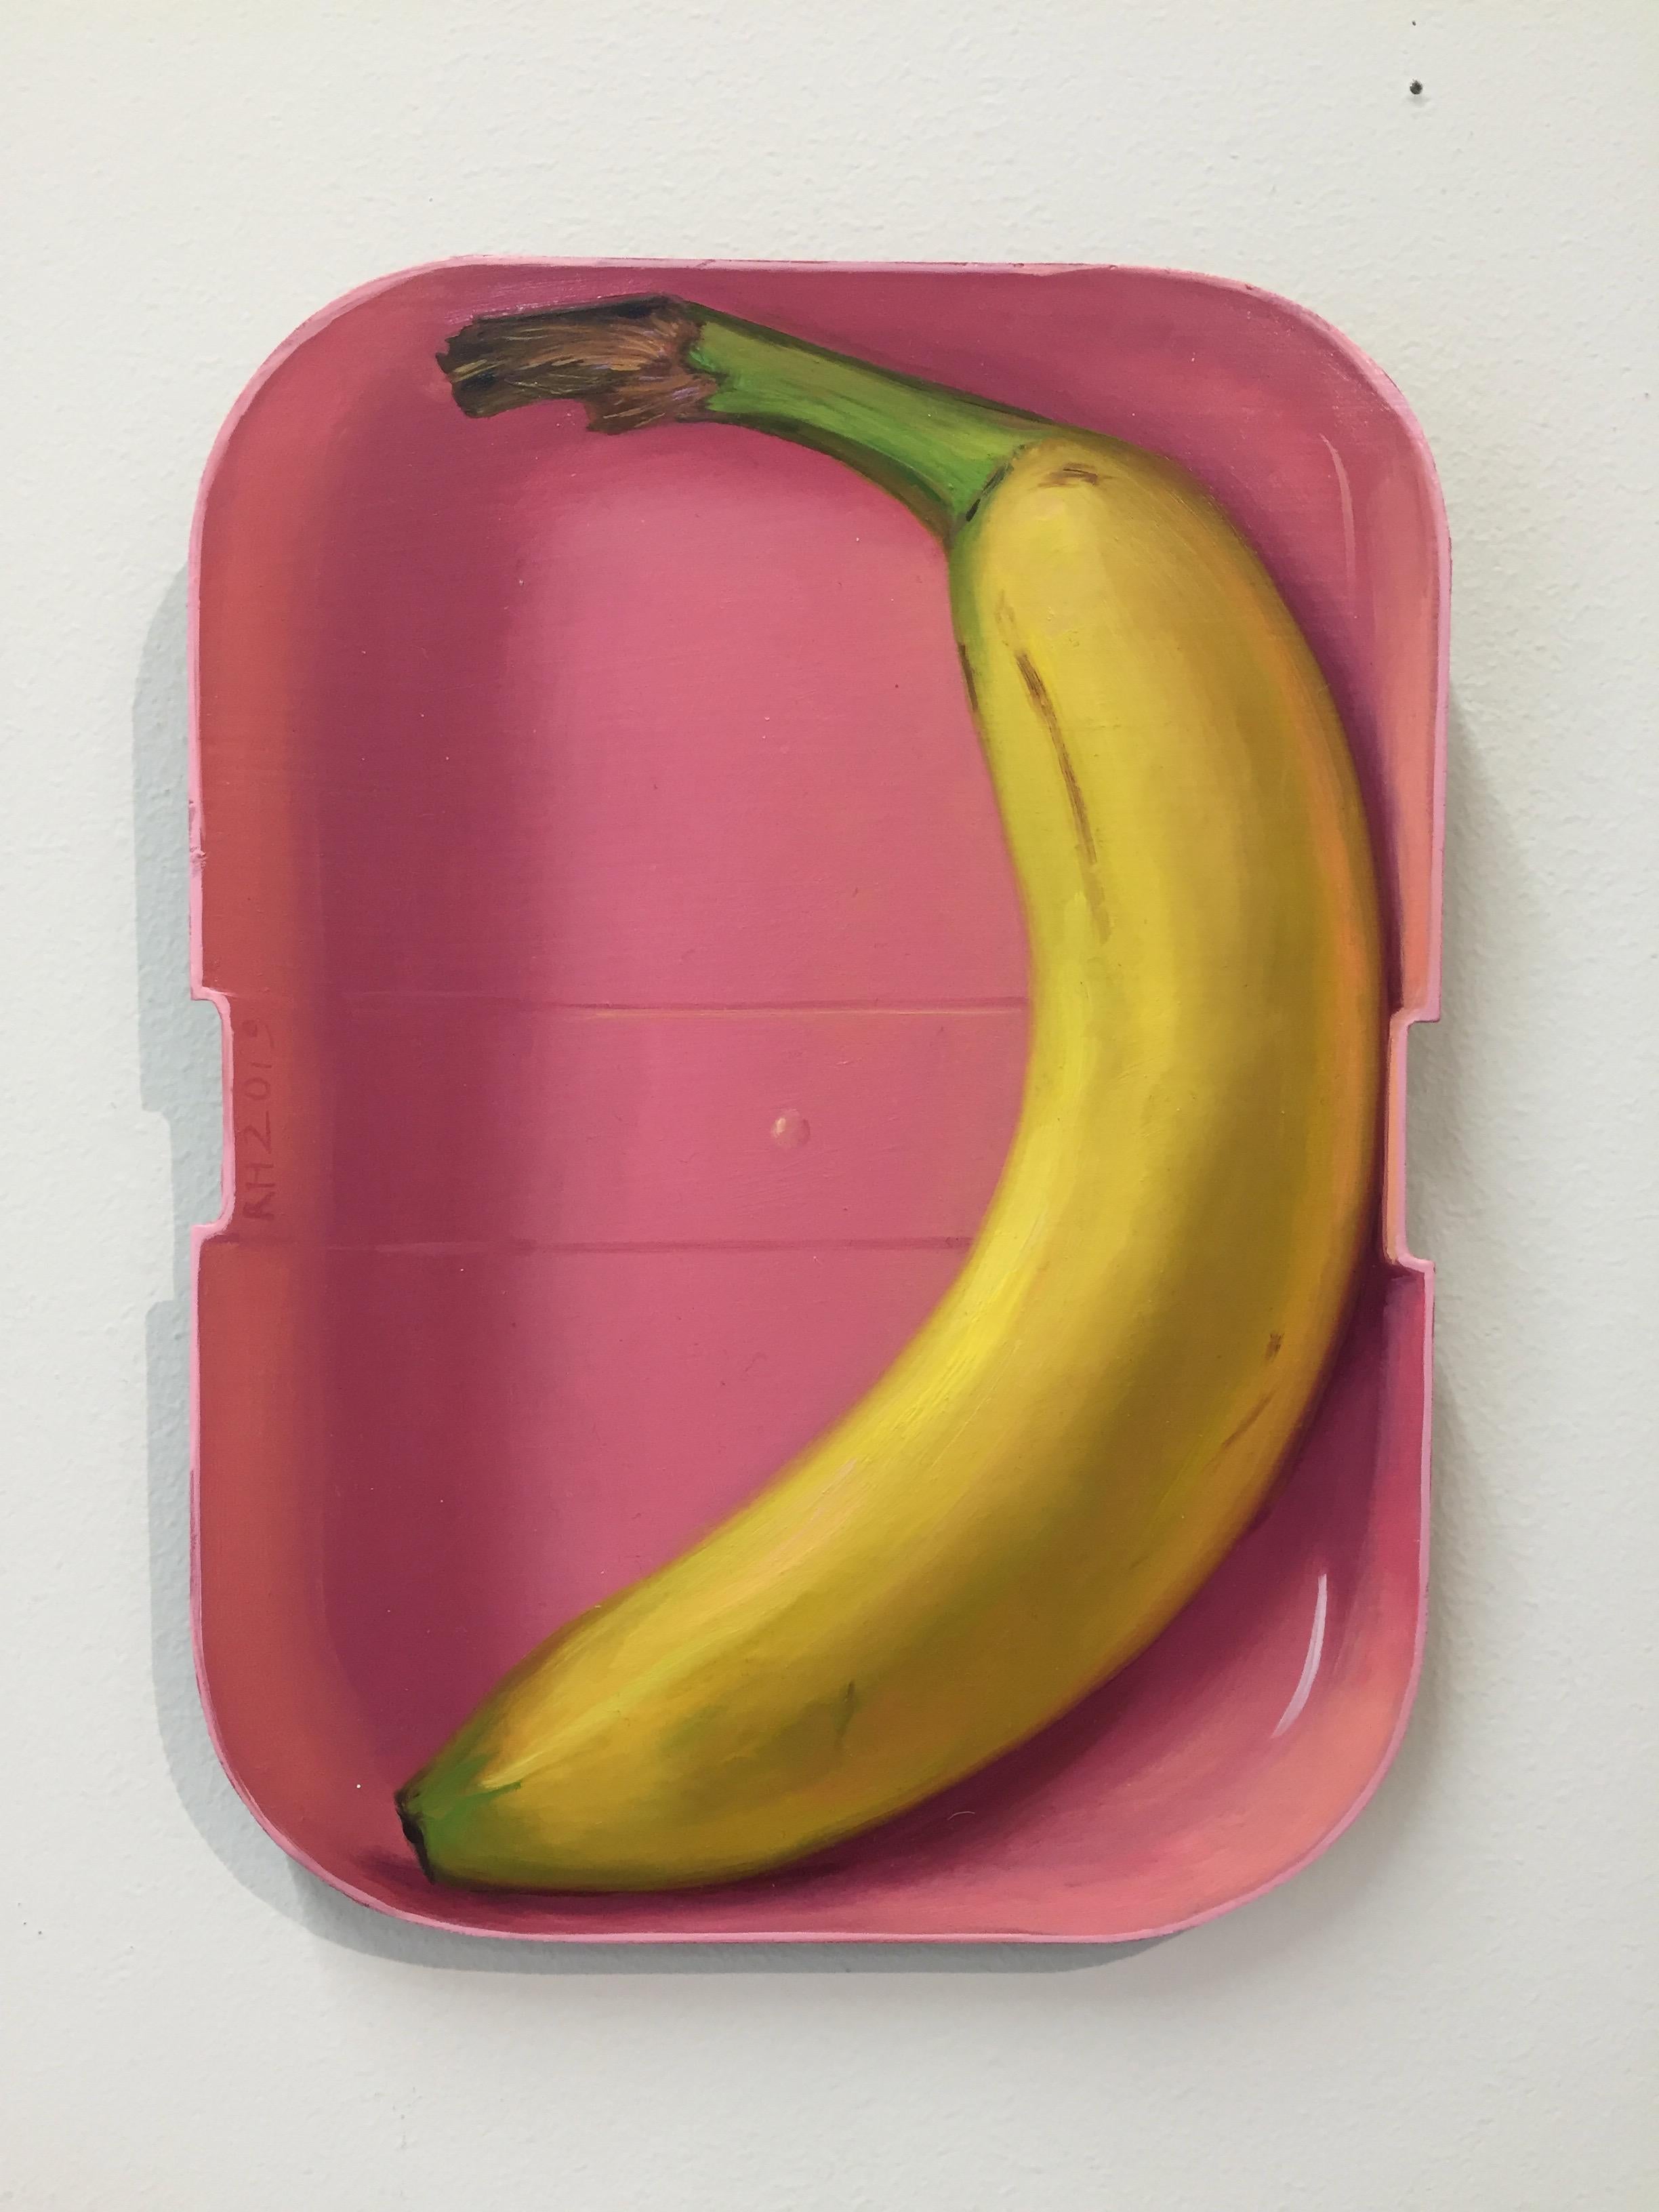 rutger hiemstra banana painting